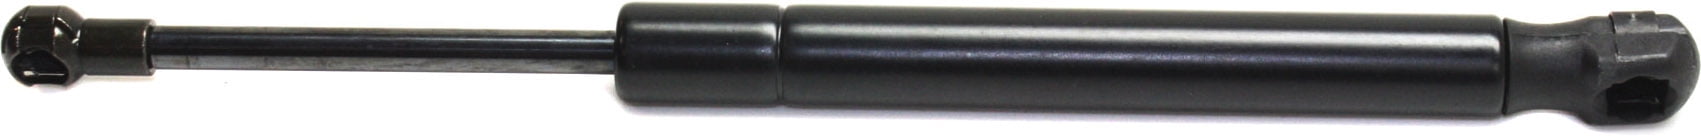 Zamjenski nosač za podizanje kompatibilan s 2003-infiniti G 6Cyl 3,5L lijevi vozač ili desni putnik koji se pojedinačno prodaje